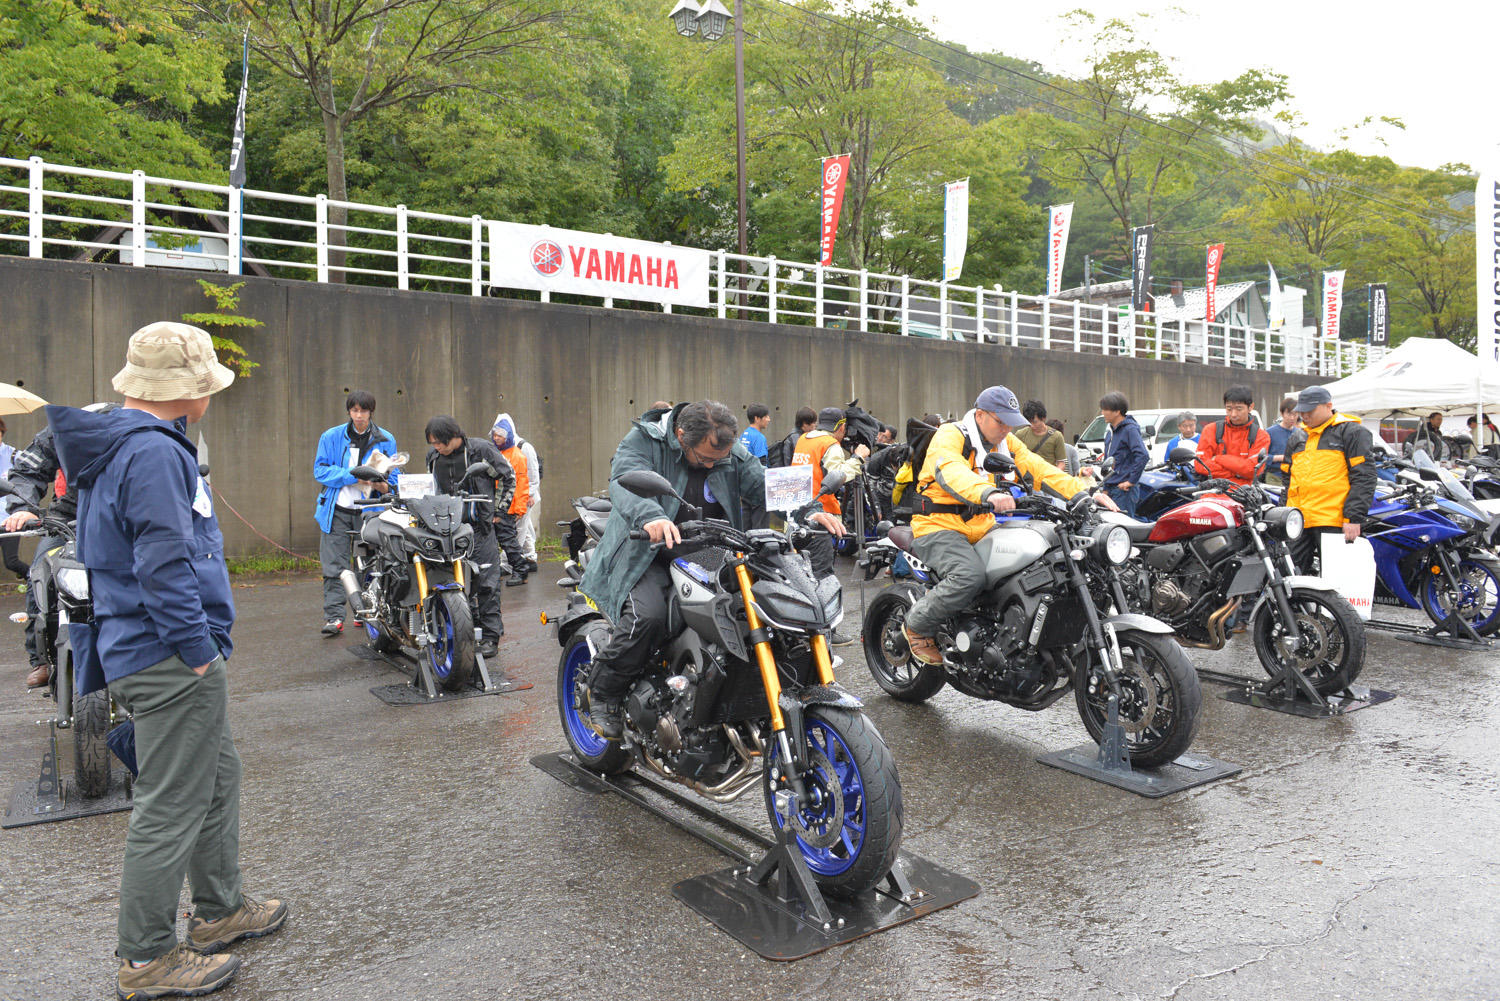 会場内では、東京・大阪のモーターサイクルショー以上に充実したモデル・ラインアップを展示（126cc以上のモデルはほぼ全部持っていきました！）。